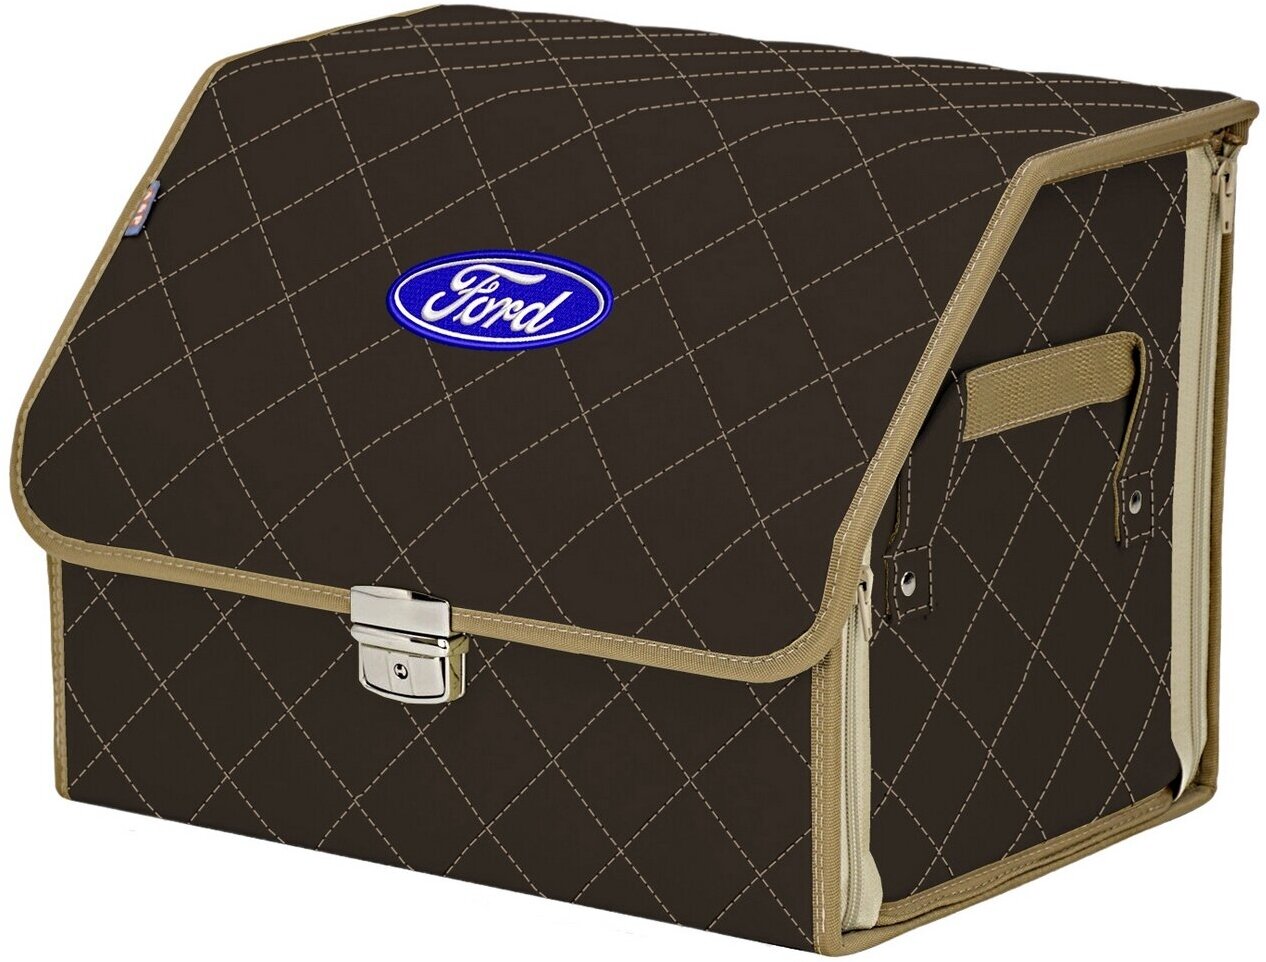 Органайзер-саквояж в багажник "Союз Премиум" (размер M). Цвет: коричневый с бежевой прострочкой Ромб и вышивкой Ford (Форд).